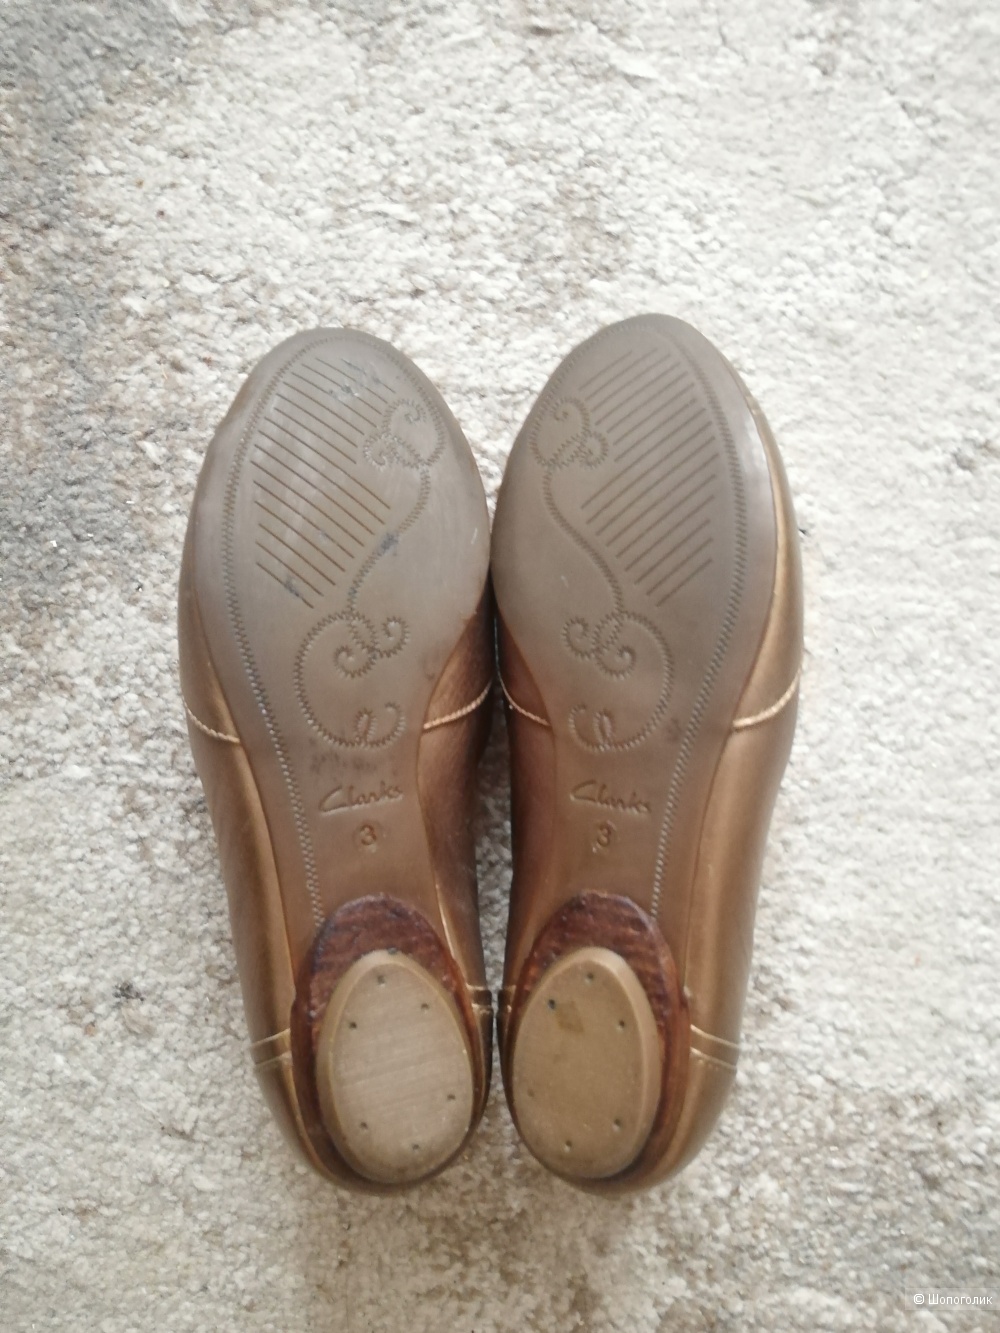 Туфли Clarks ACTIVE AIR, натуральная кожа, размер eu 3/24 см